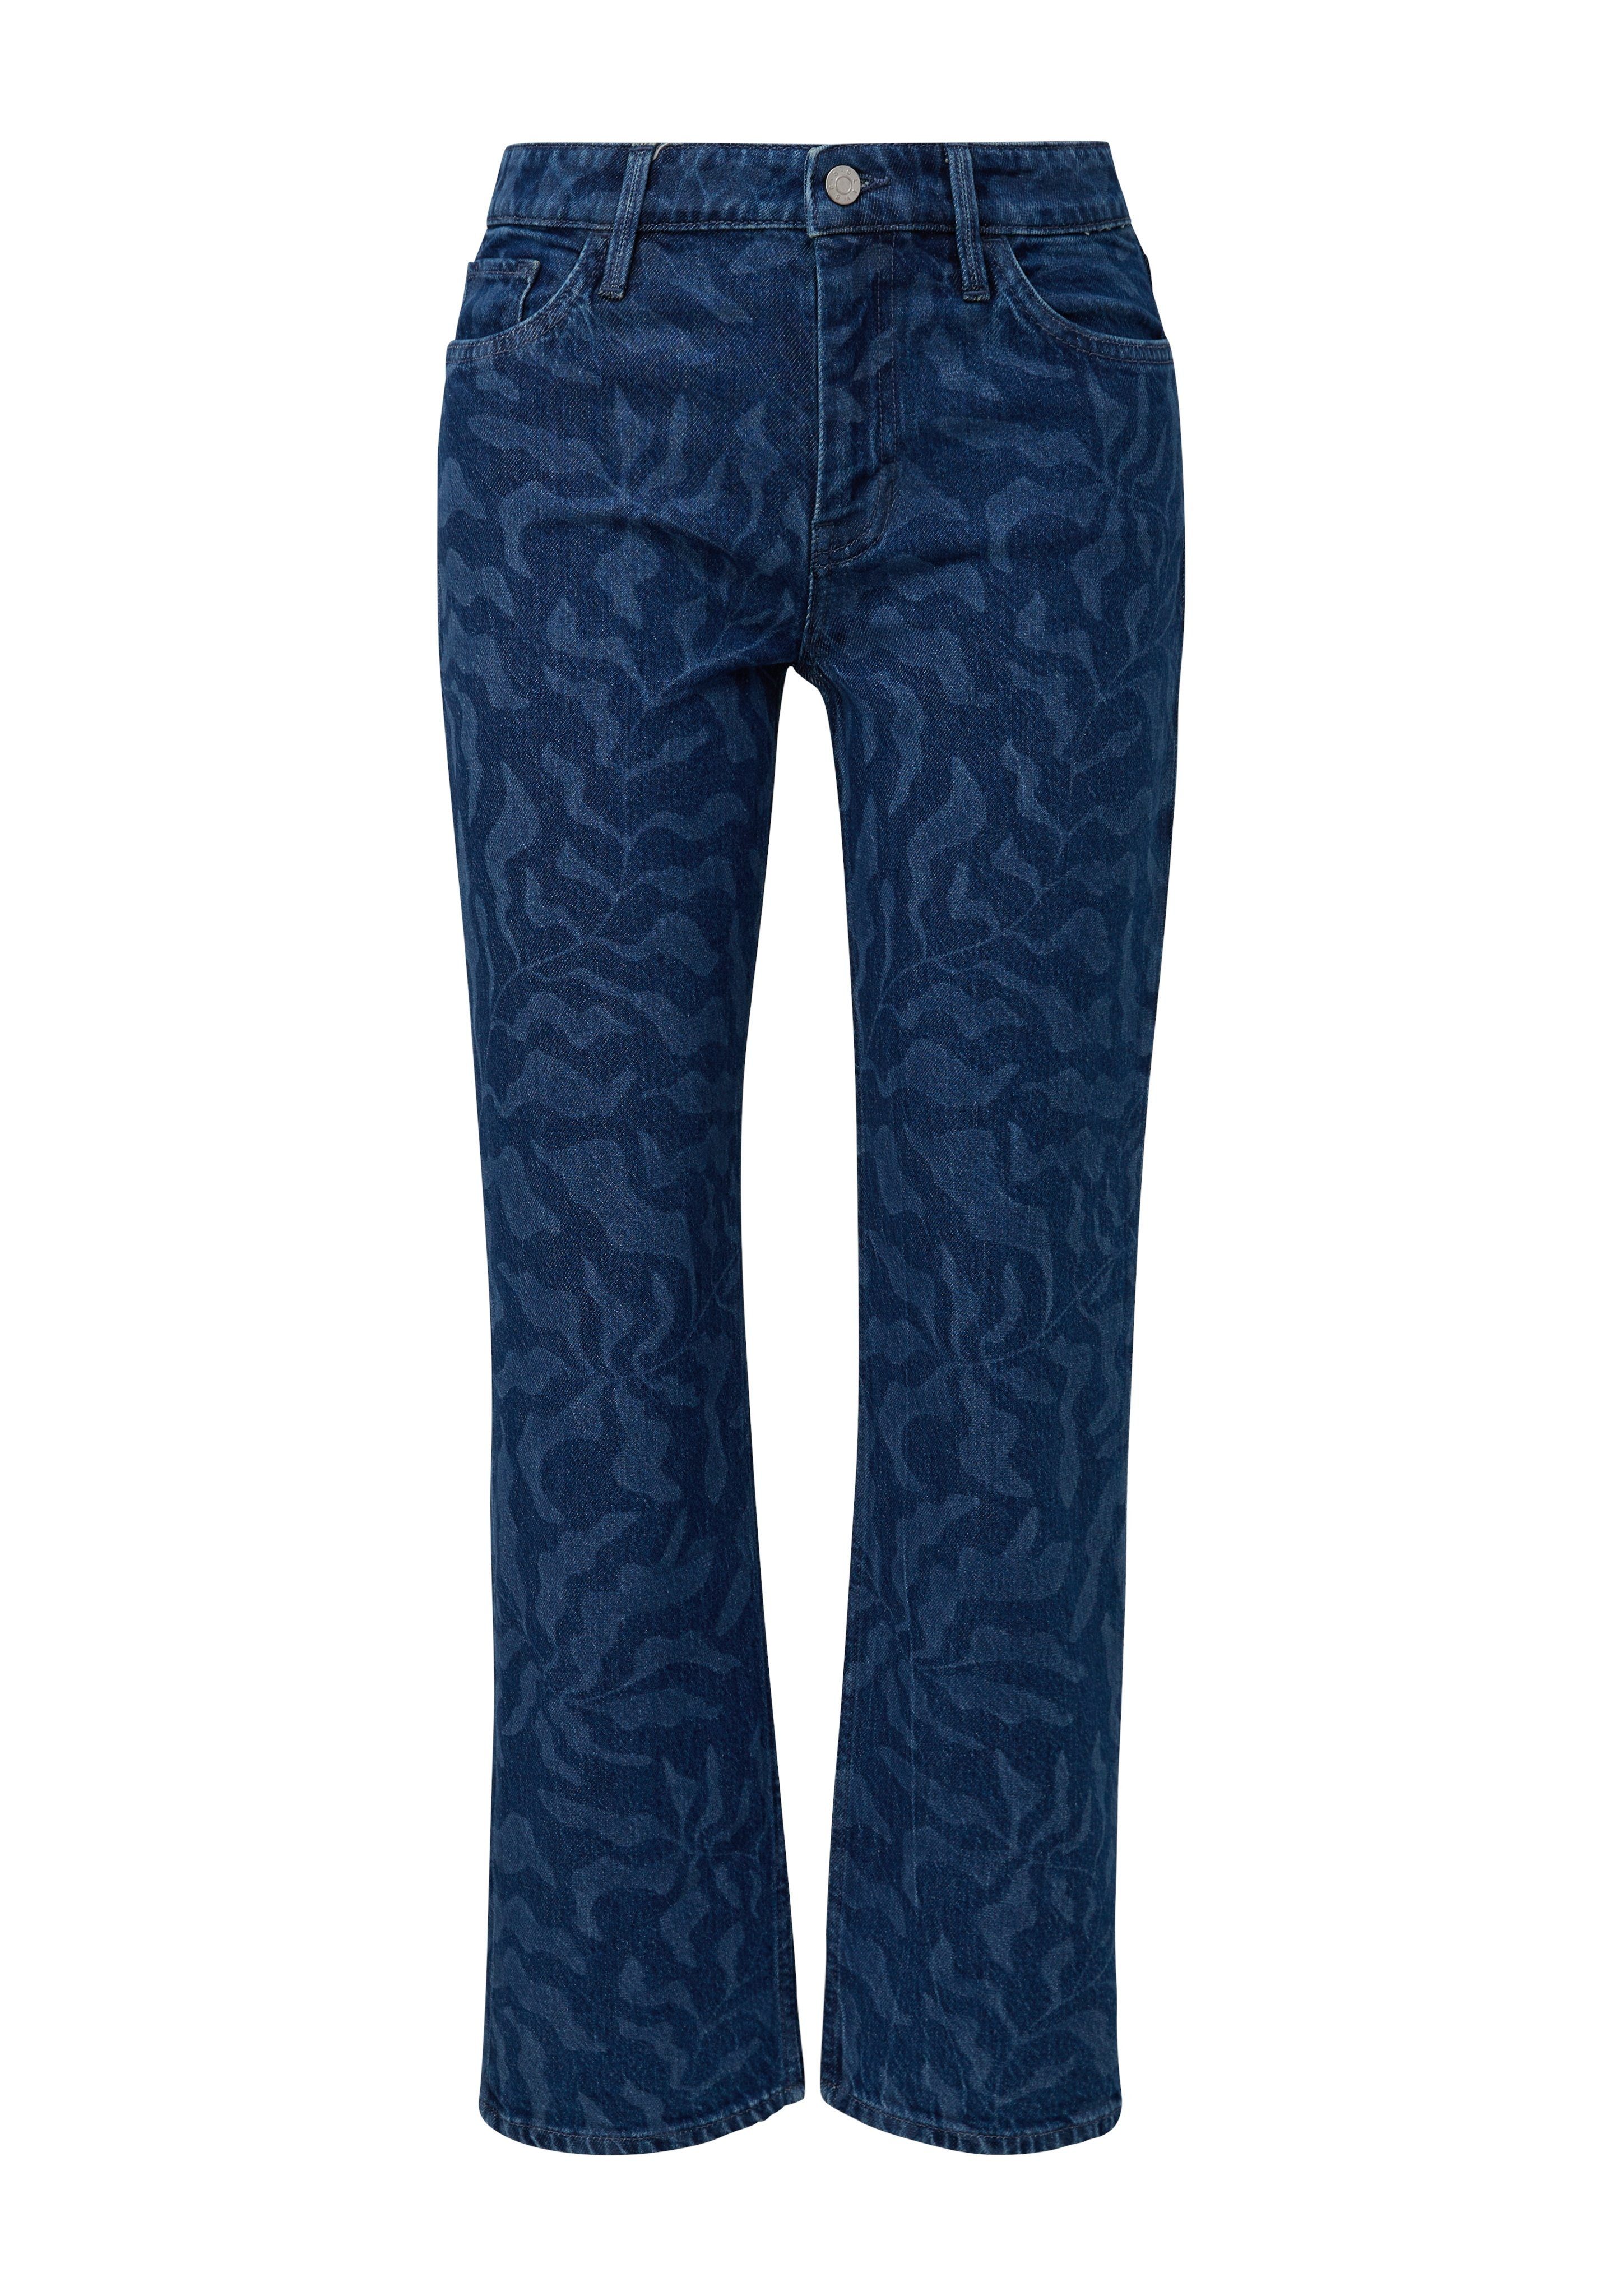 s.Oliver 5-pocket jeans Karolin met een bloemmotief